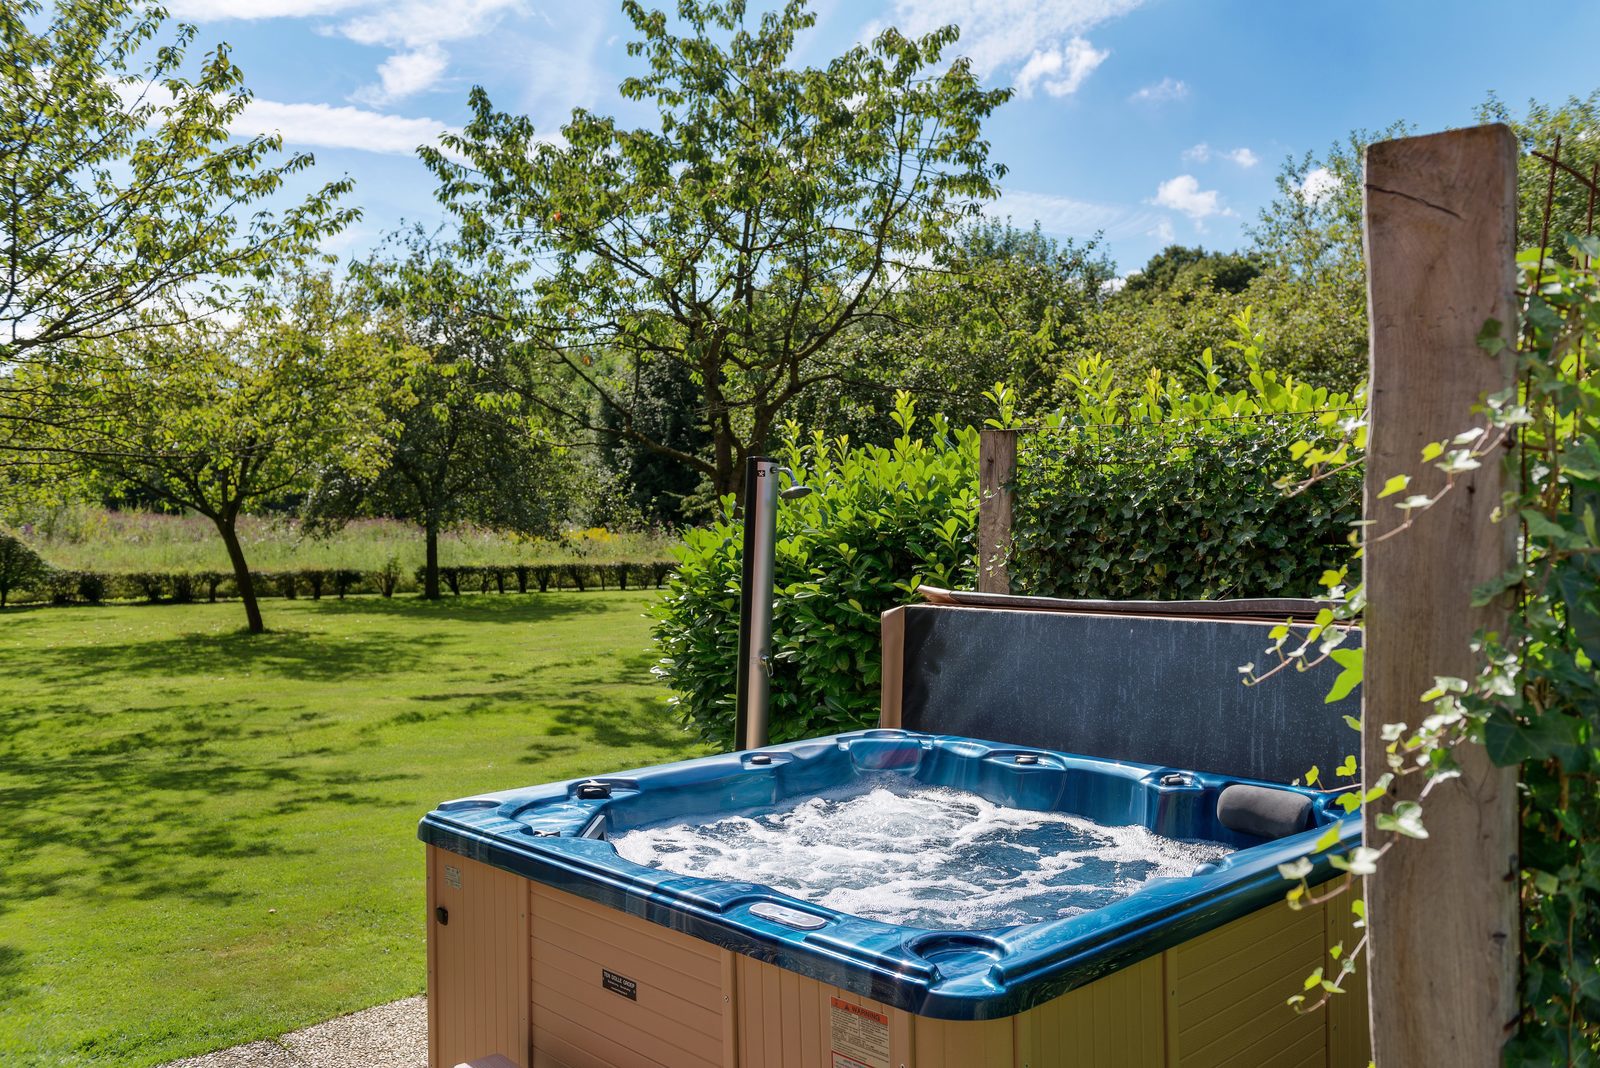 Vakantiehuizen met zwembad, sauna en buiten bubbelbad in Nederland, België, Duitsland, Frankrijk